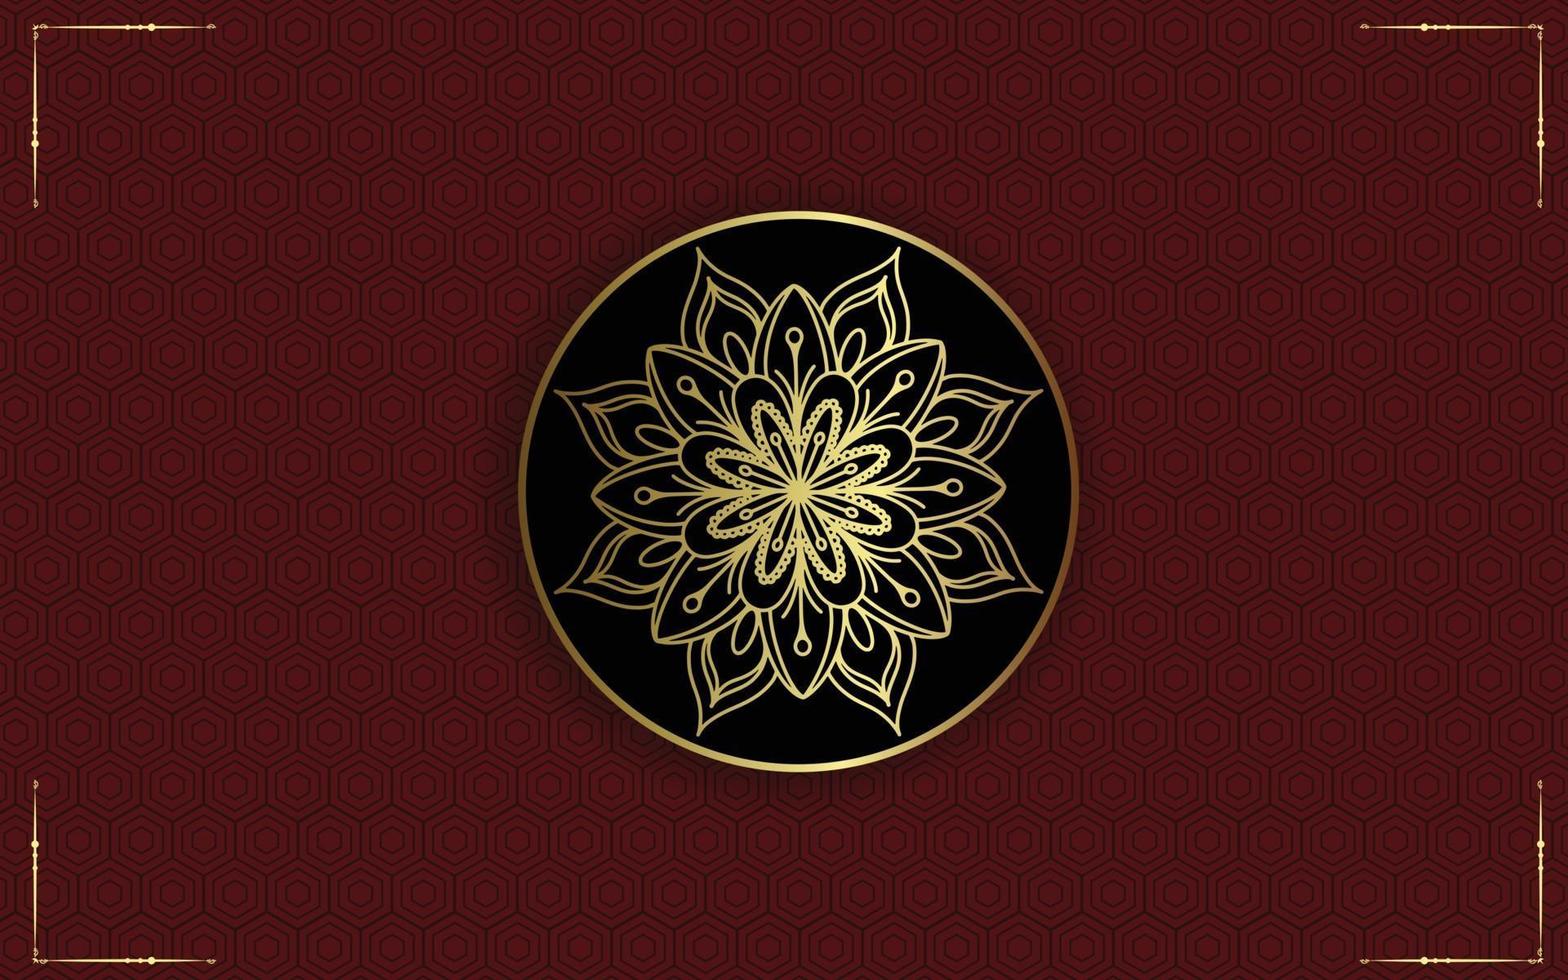 Fondo de mandala ornamental de lujo con estilo de patrón oriental islámico árabe vector premium